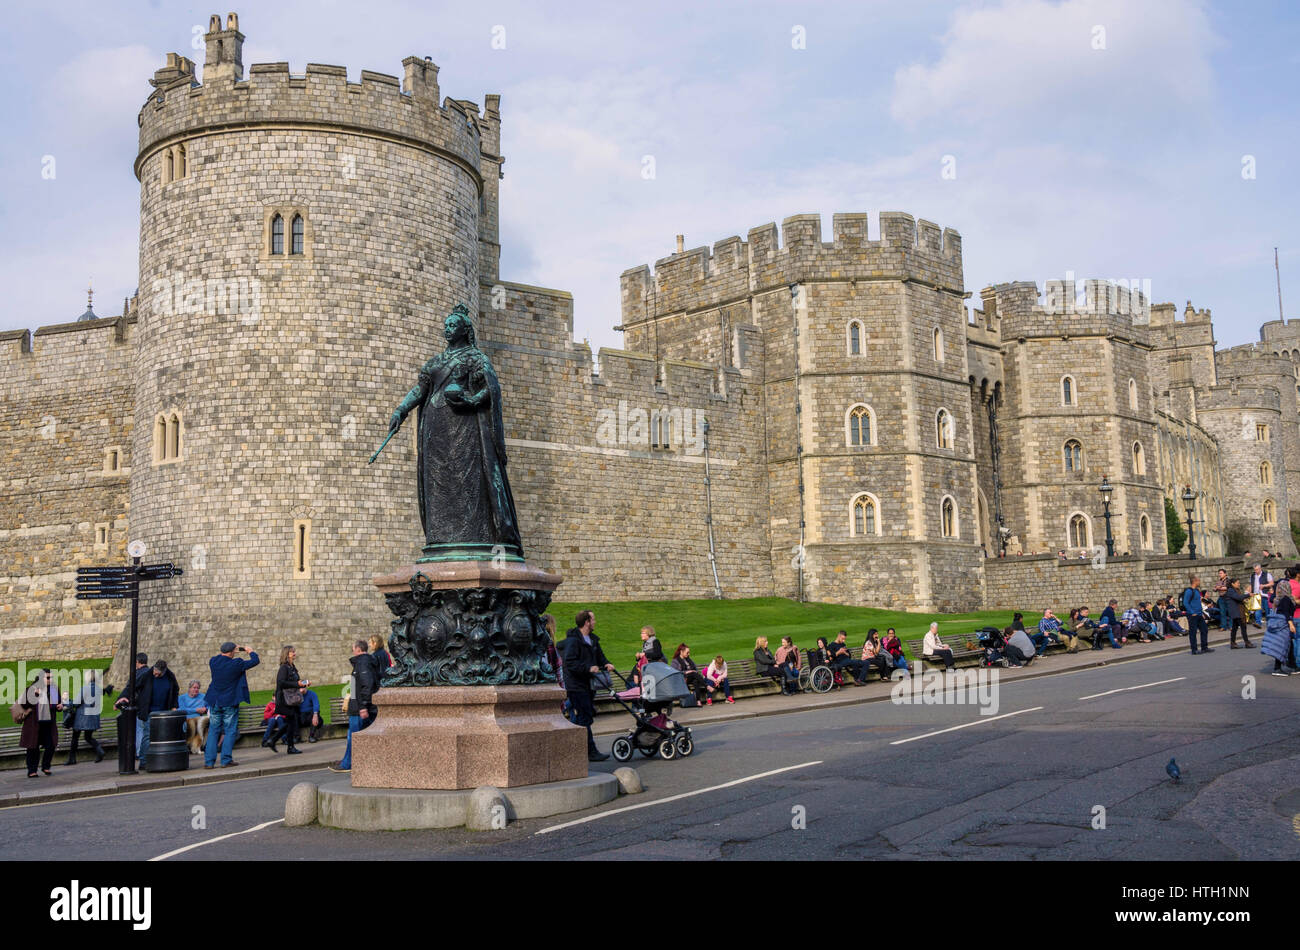 Una statua di bronzo di Queen Victoria sorge su un plynth davanti al Castello di Windsor sulla Collina del Castello di Windsor, Berkshire, Regno Unito. Foto Stock